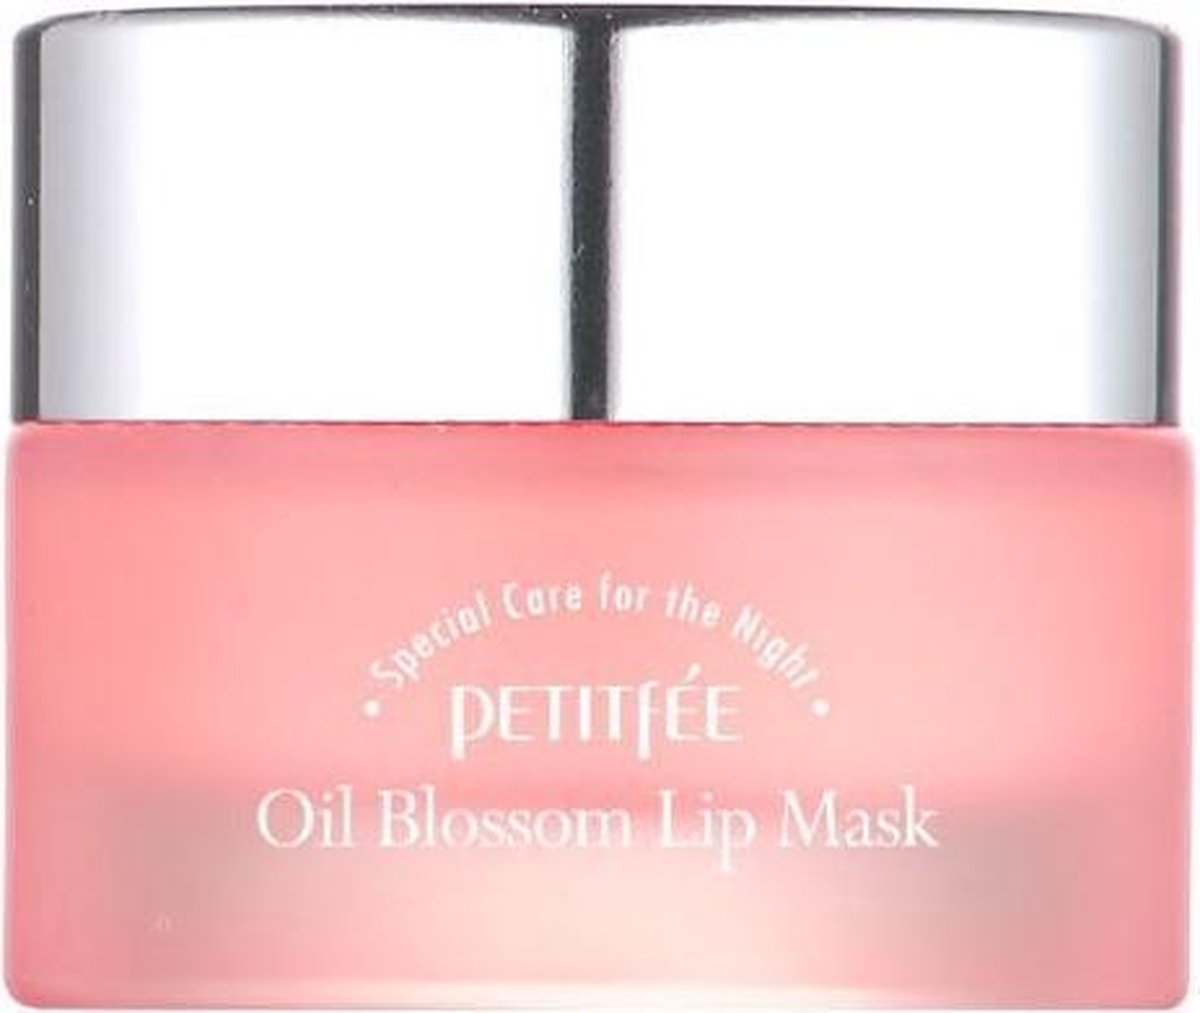 Petitfée Oil Blossom Camellia Lip Mask 15g